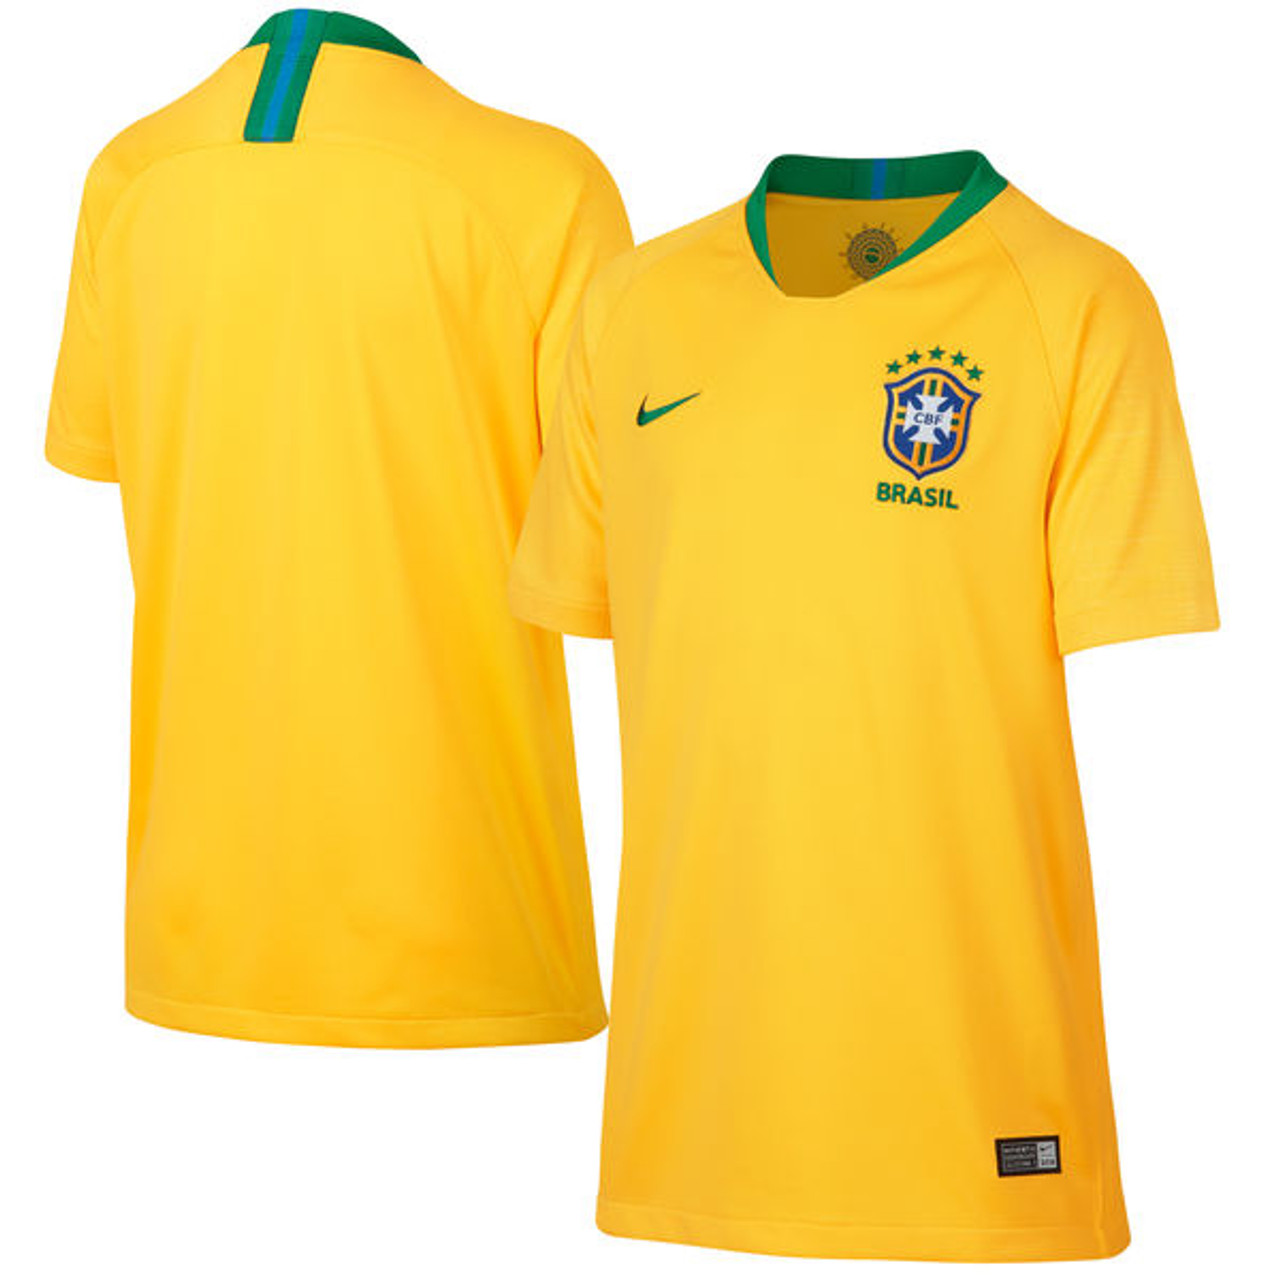 brazil nike shirt